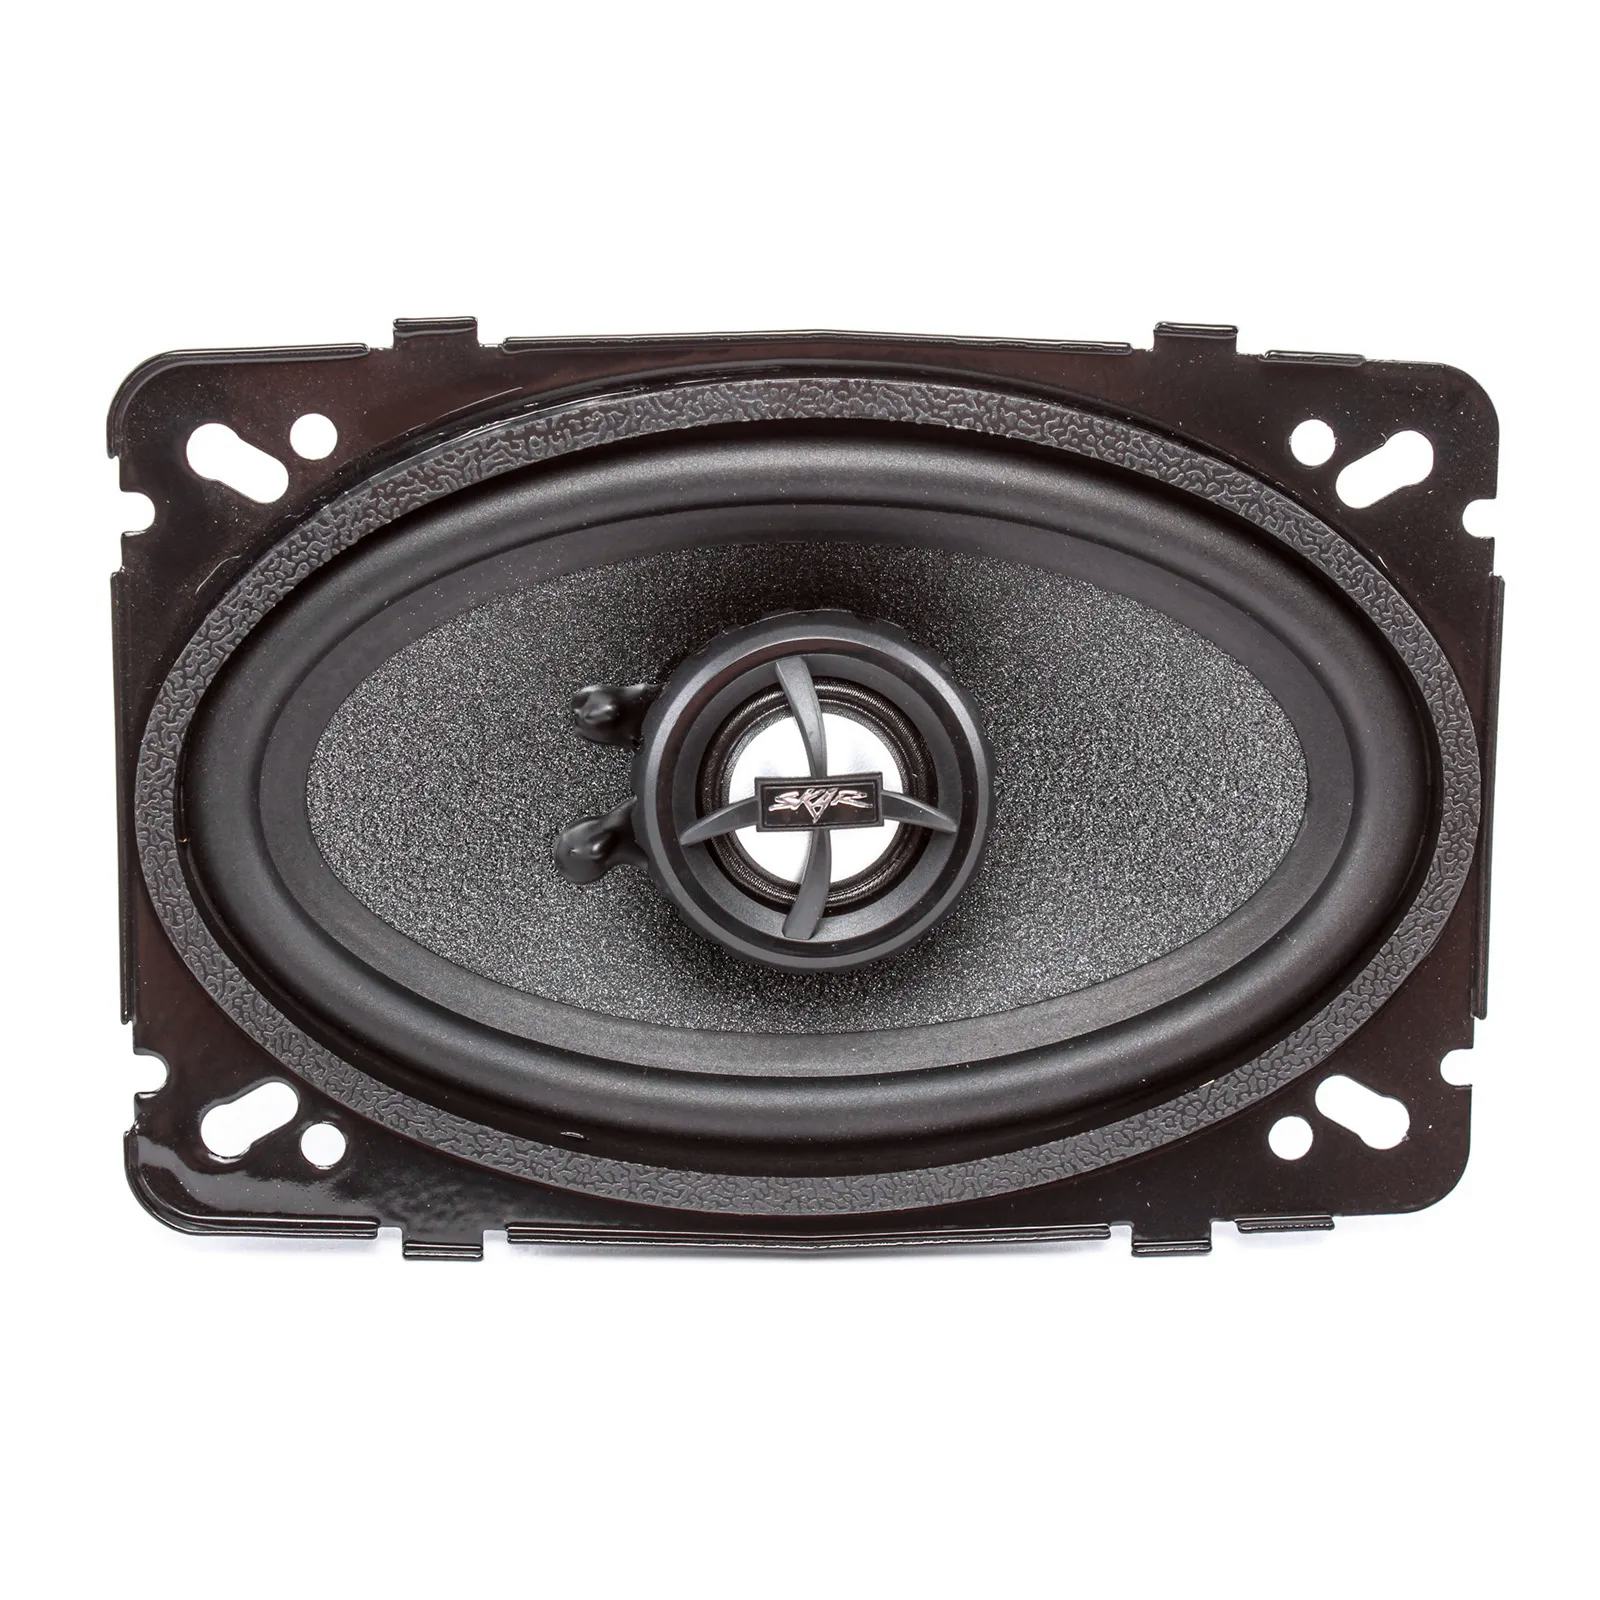 RPX46 | 4" x 6" 150 Watt Coaxial Car Speakers - Pair #2